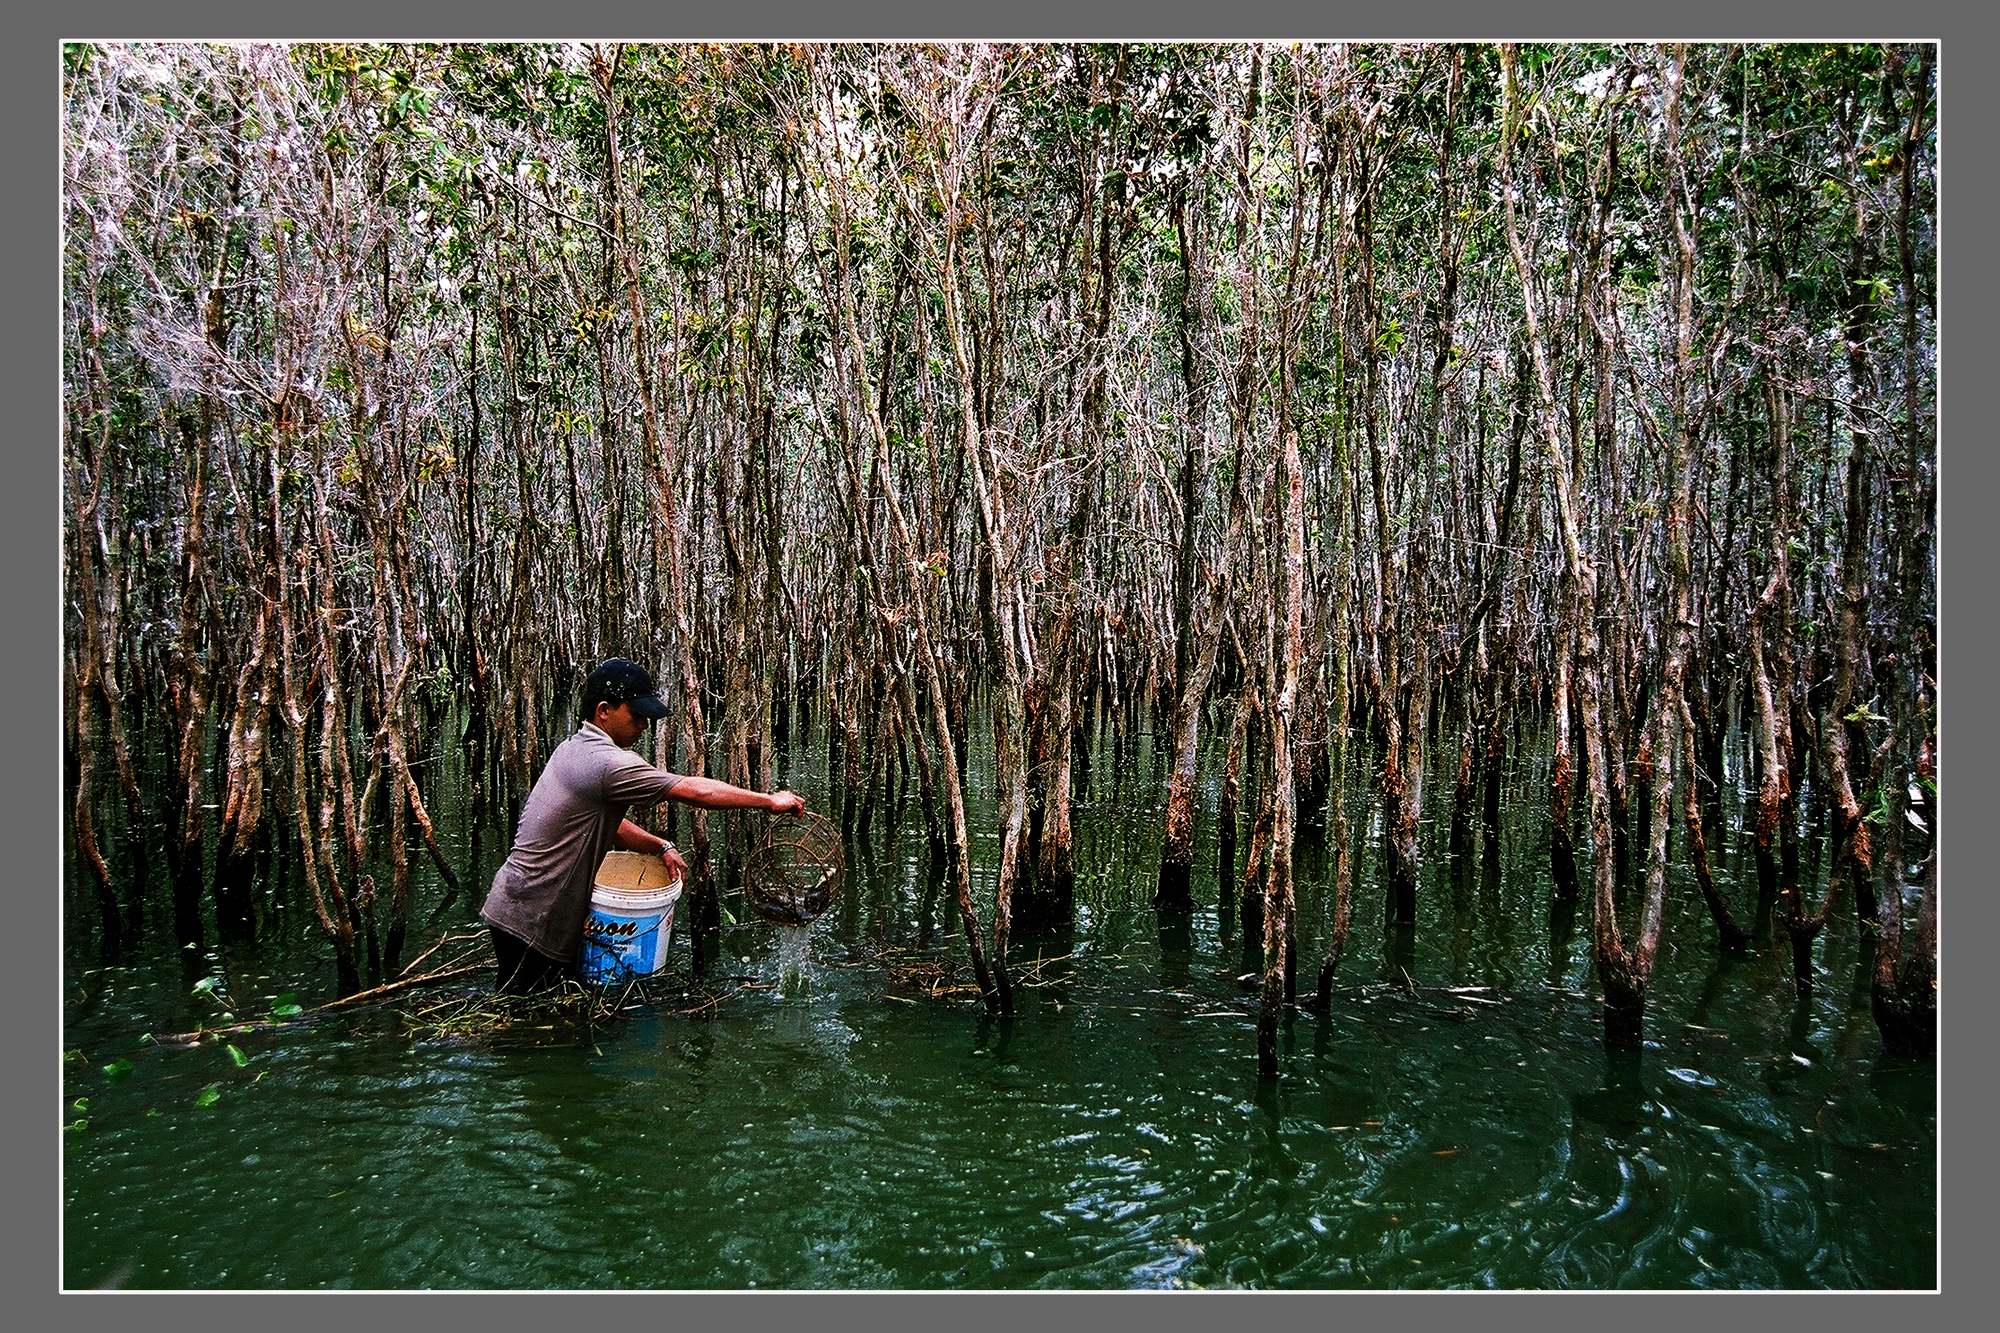 Cận cảnh loài cá đồng-cá đặc sản nổi tiếng bắt trong rừng ngập nước Cà Mau - Ảnh 2.